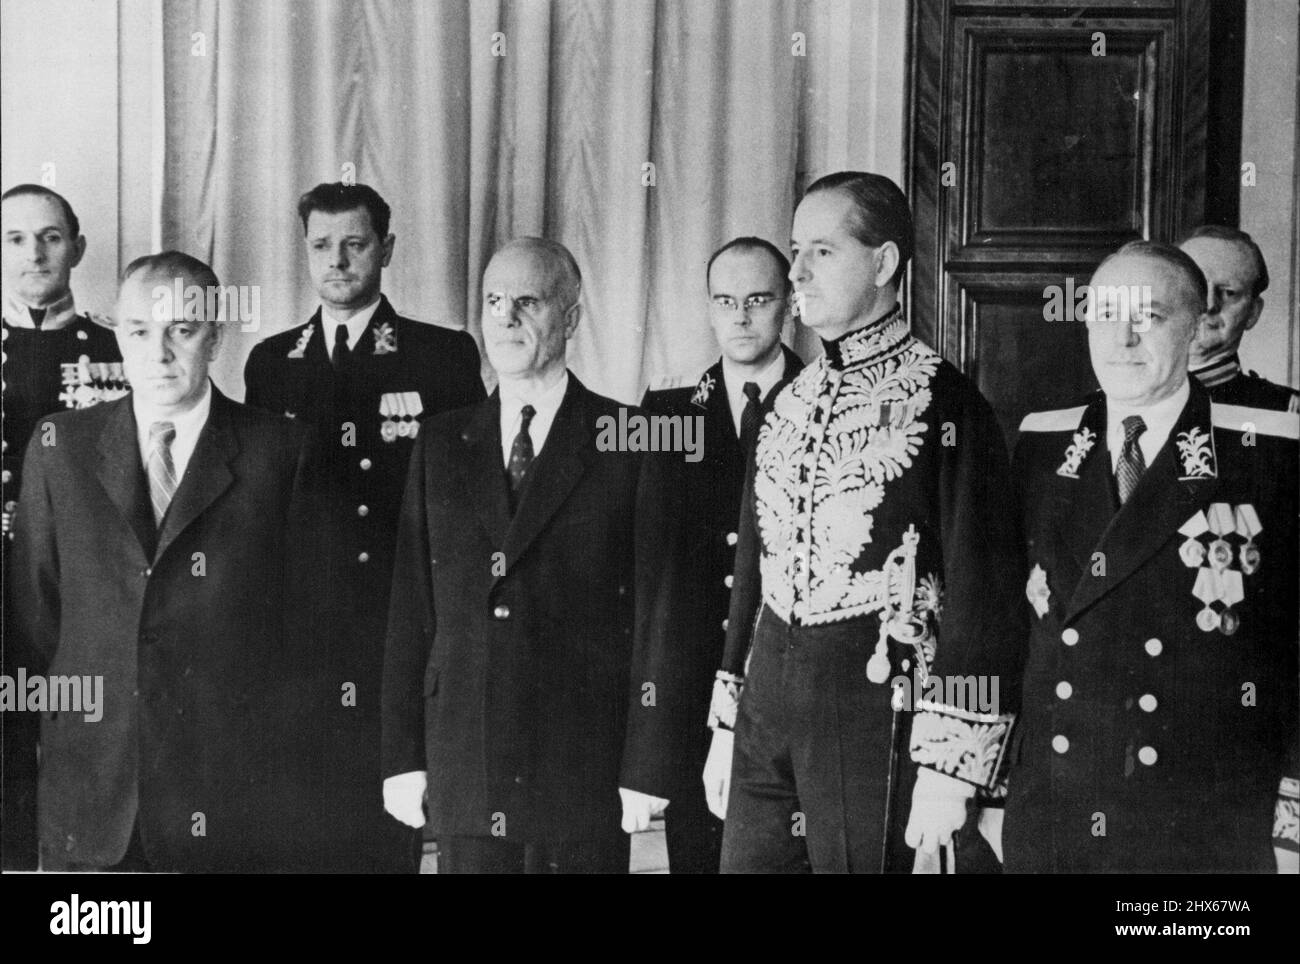 Hayter al Cremlino Sir William Hayter, nuovo ambasciatore britannico presso gli U.S.R. (Secondo da destra), è visto al Cremlino a Mosca il 10 ottobre quando ha presentato le sue credenziali. In figura sono mostrati (fila anteriore, da sinistra) N.M. Pegov, Segretario al Praesidium del Soviet Supremo; P. Tarasov, Vice presidente del Soviet Supremo, che ha ricevuto le credenziali dell'inviato britannico Sir William Hayter; e V.A. Zorin, vice ministro degli Esteri. Ottobre 14, 1953. (Foto di stampa associata). Foto Stock